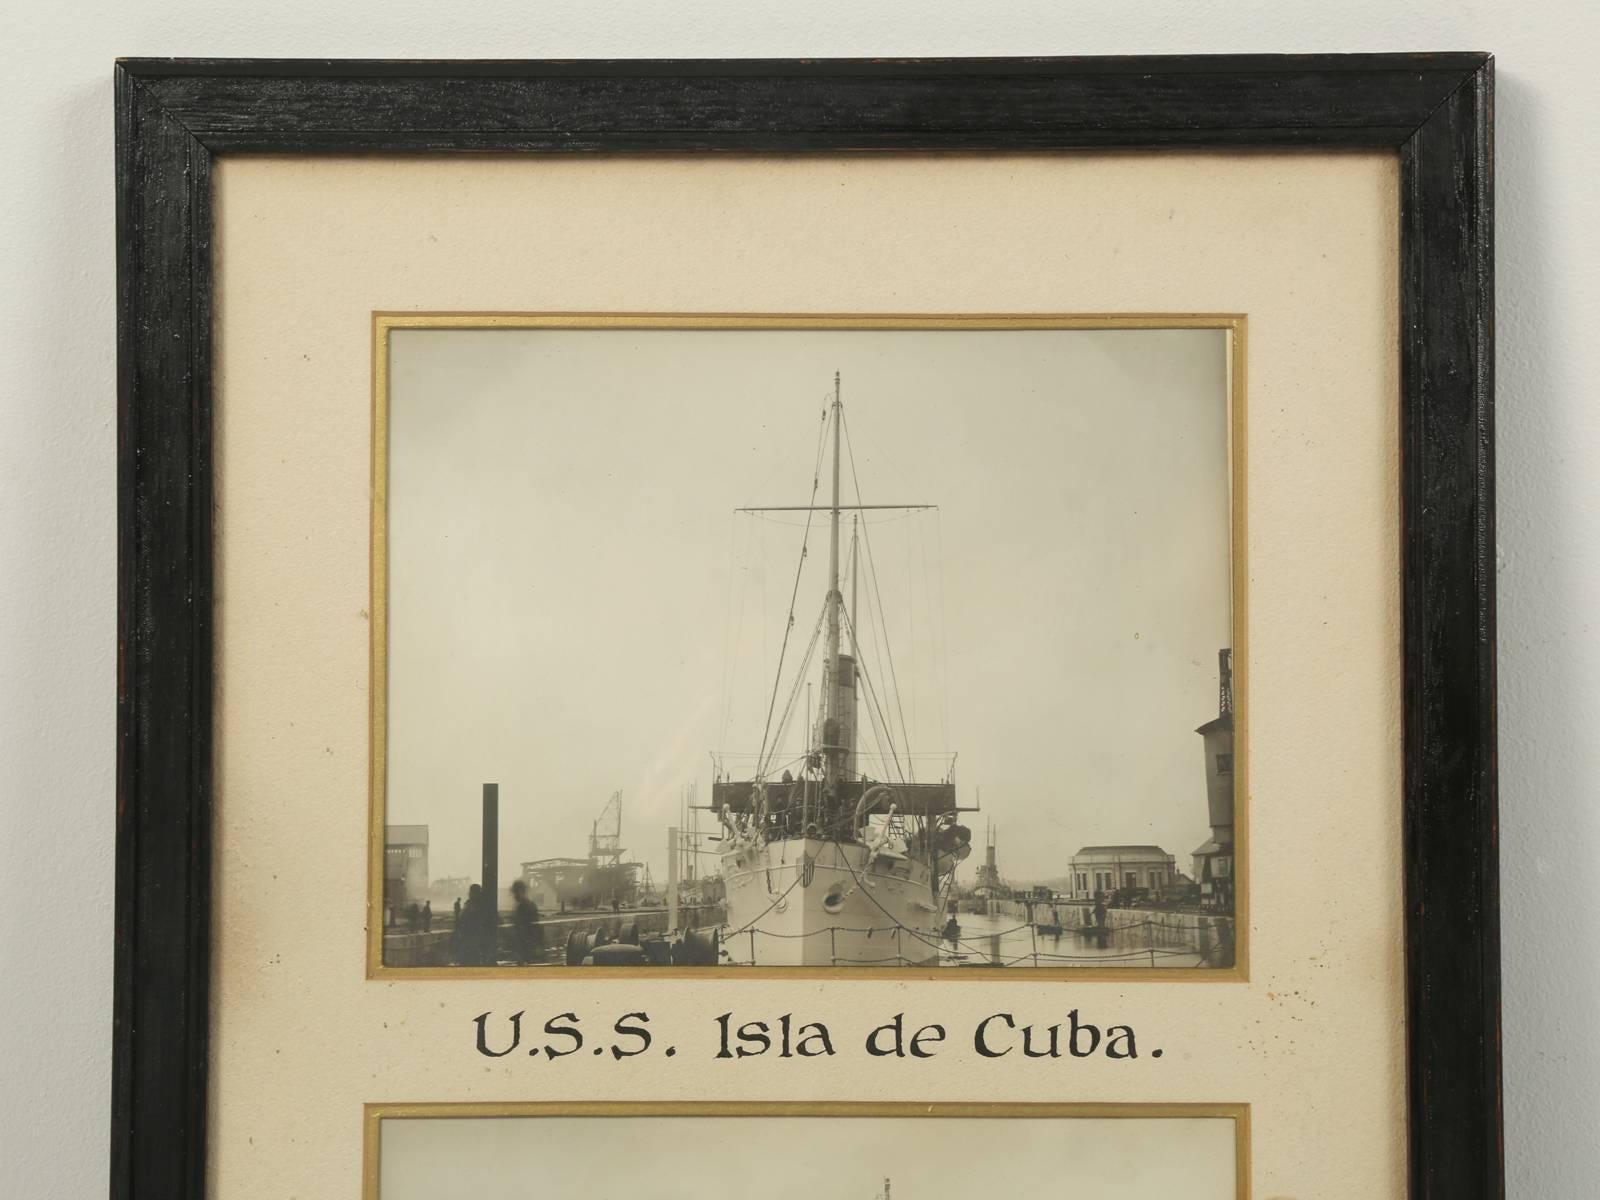 Verlegt zur Glenview Naval Air Station in Glenview, Illinois, die 1995 geschlossen wurde. Die USS Isla de Cuba war ein ehemaliger Kreuzer der spanischen Marine, der von der US Navy gekapert und als Kanonenboot in Dienst gestellt wurde. Das